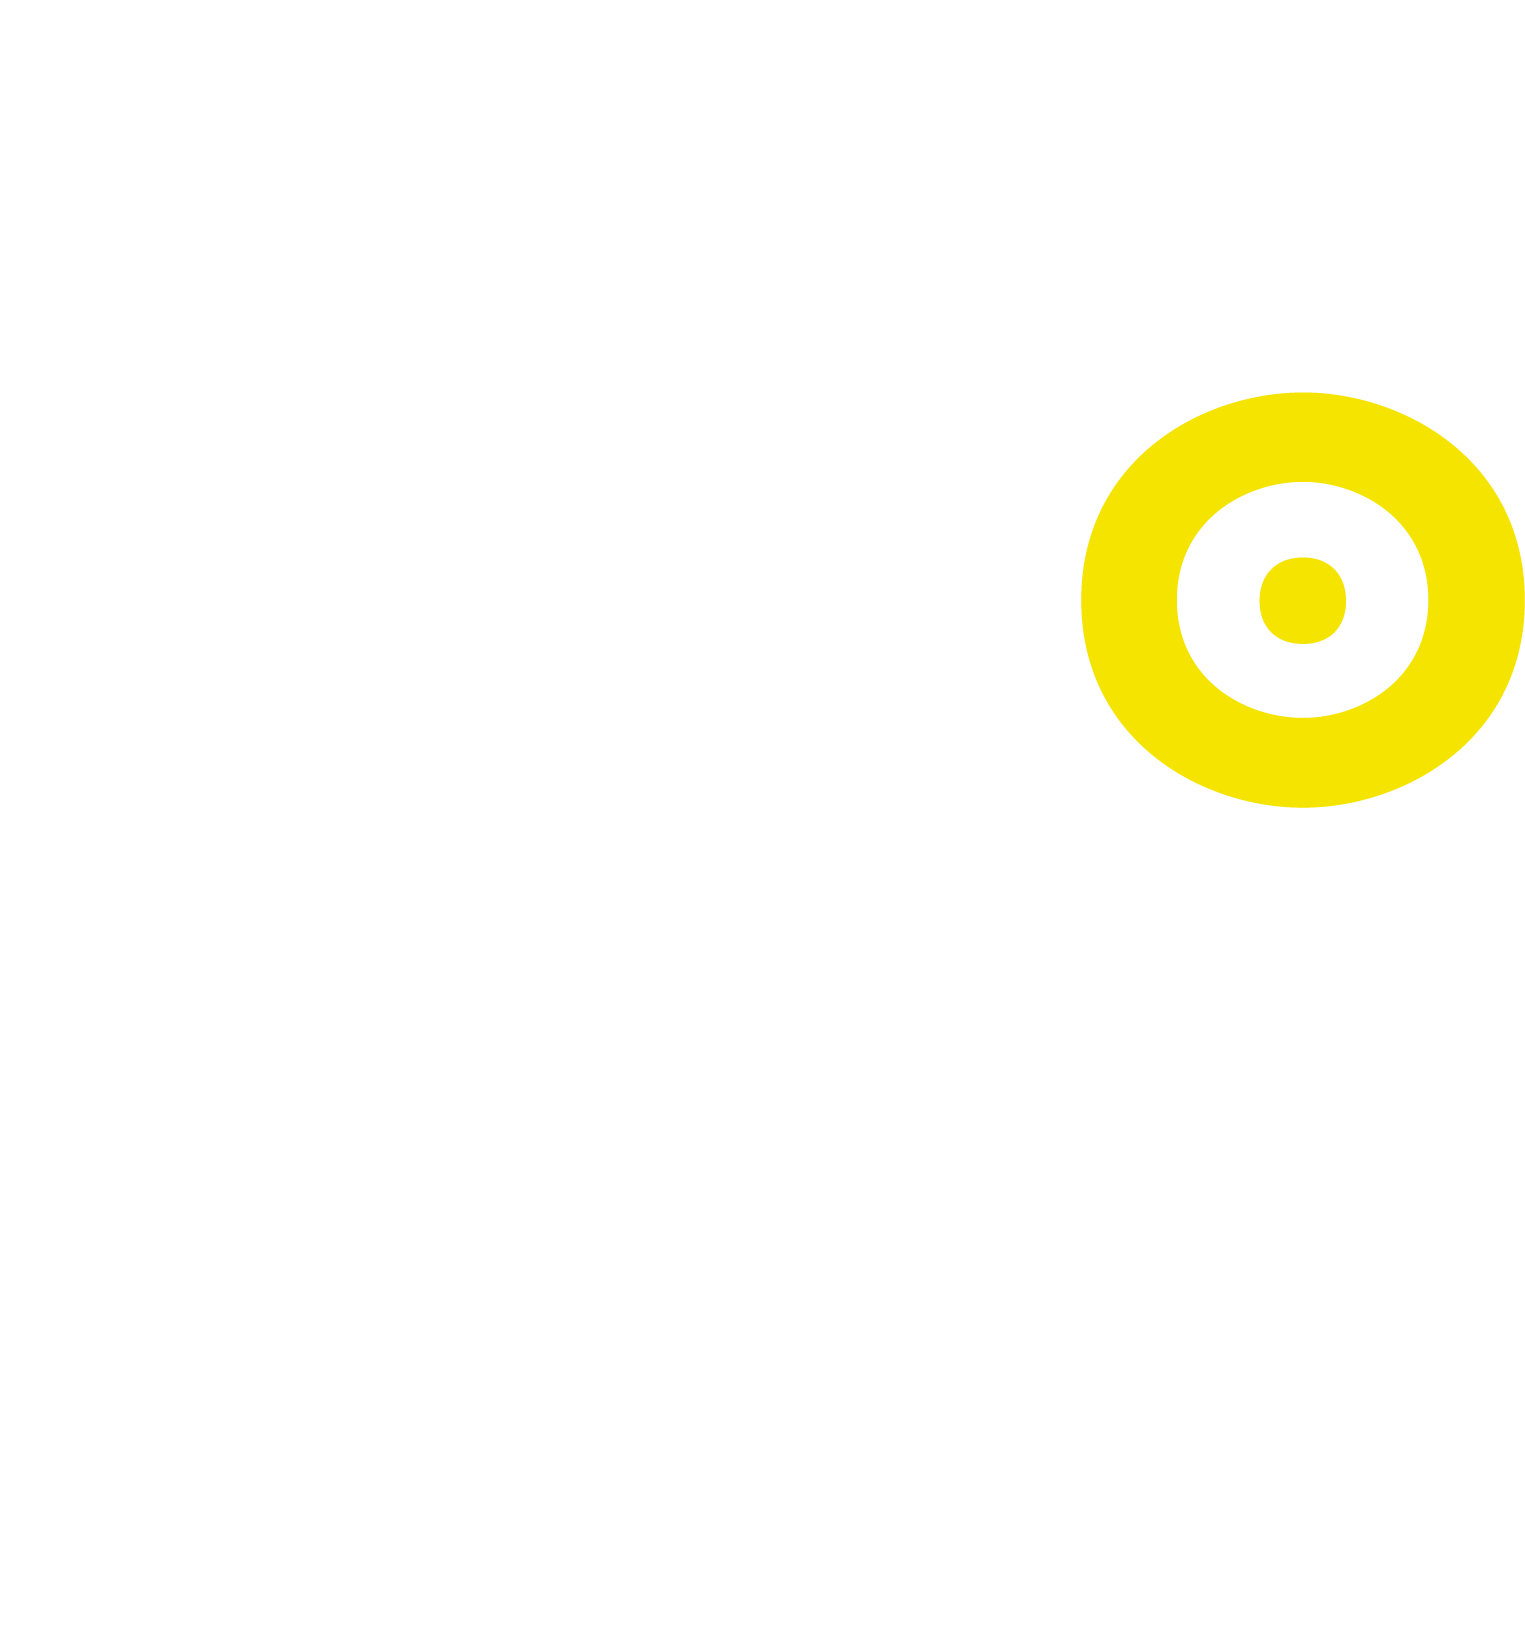 TiGiroilLazio